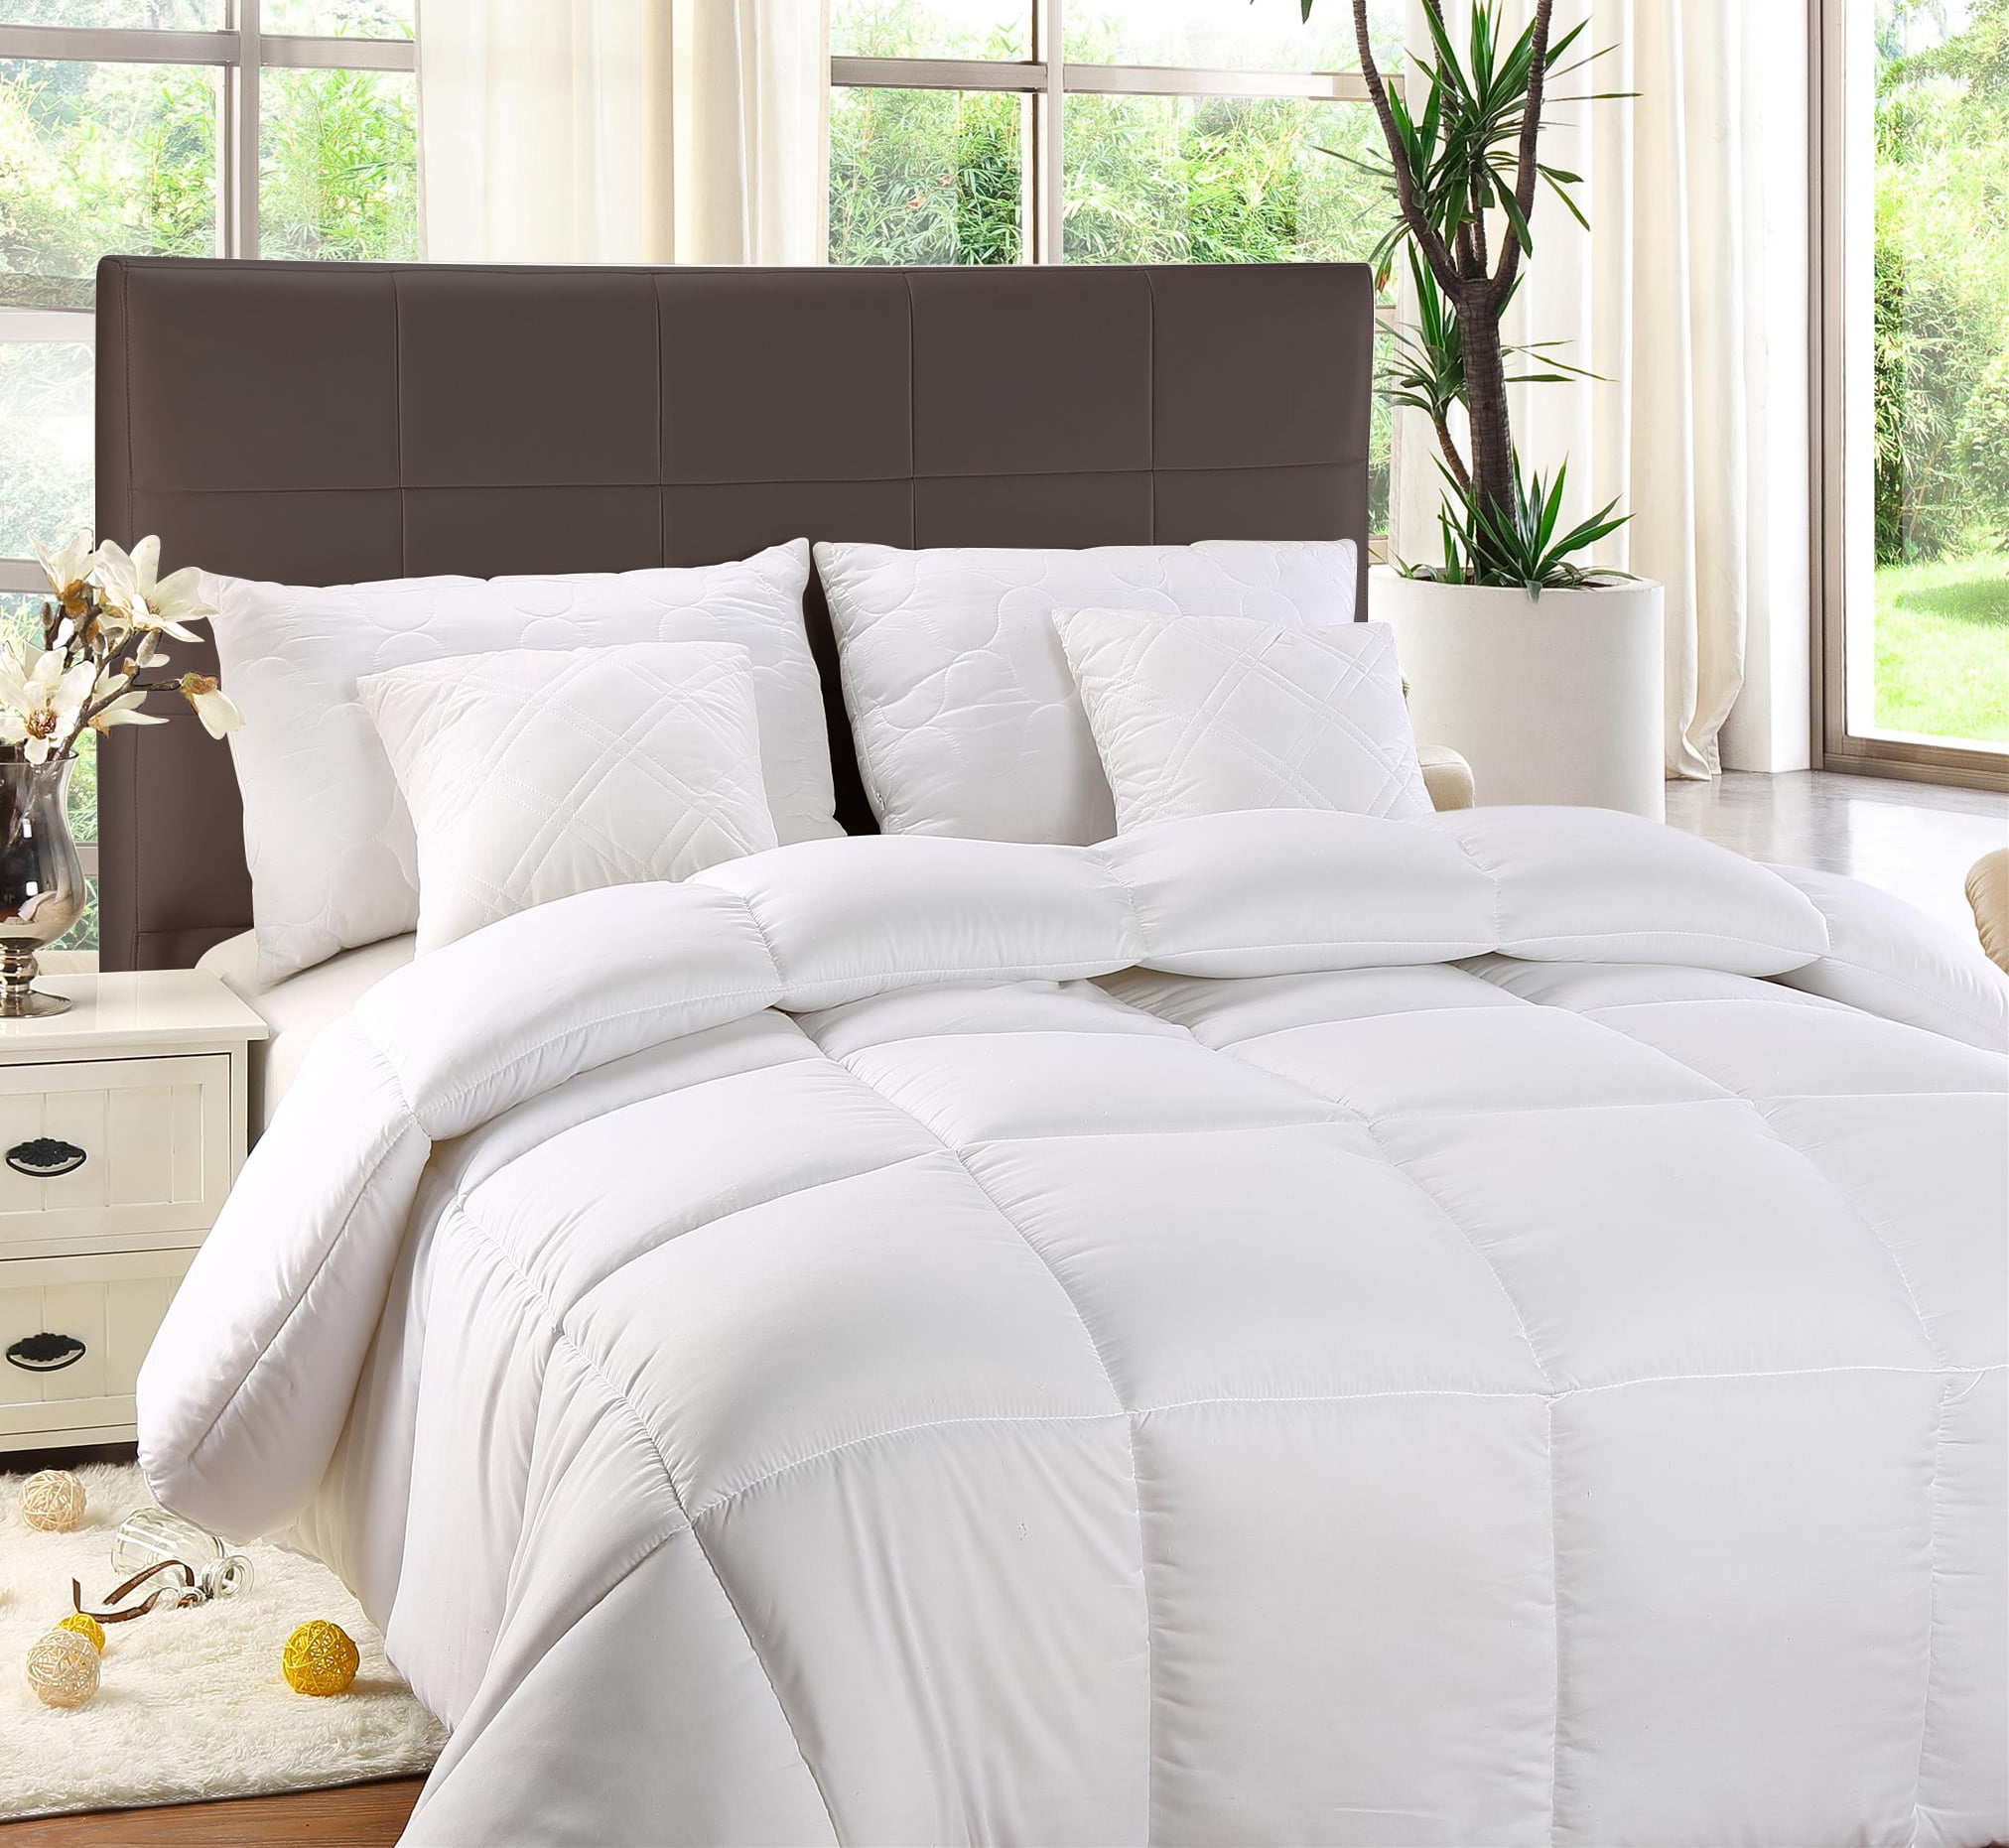 Utopia Bedding Comforter Duvet Insert - Quilted Comforter with Corner